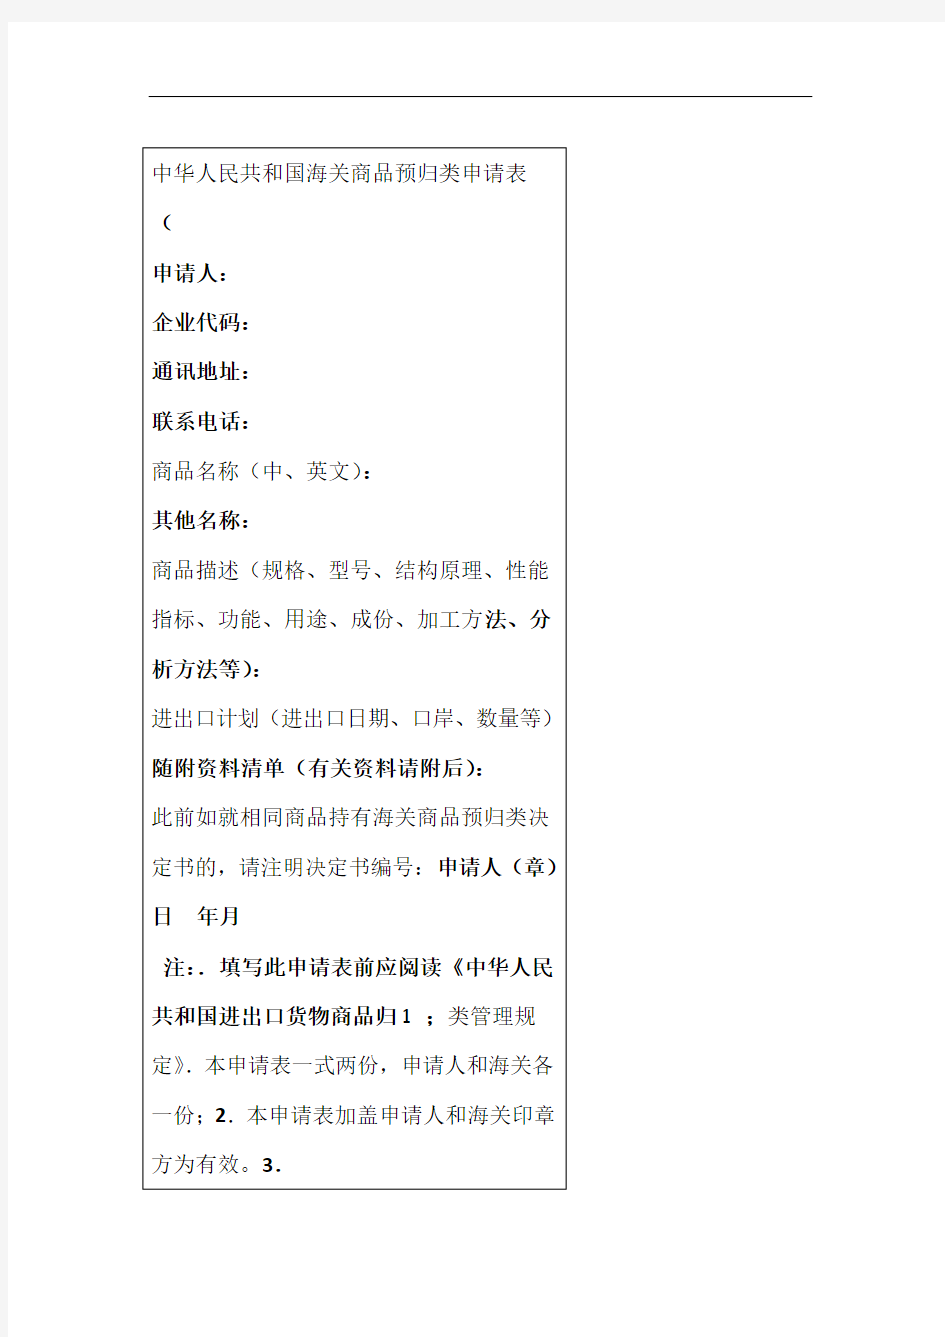 中华人民共和国海关商品预归类申请表